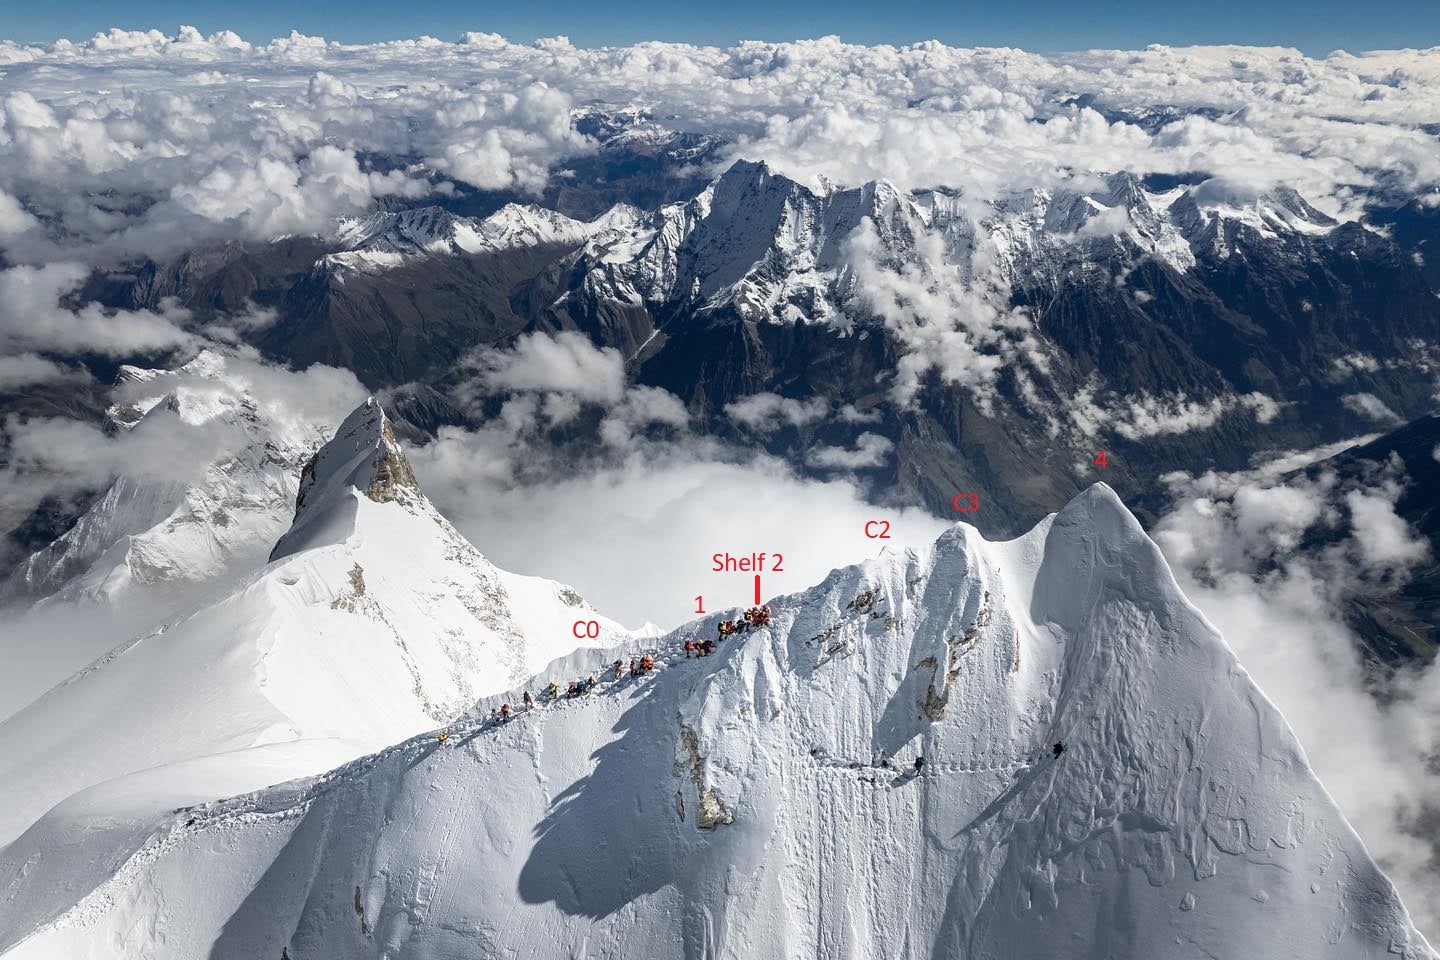 Те же альпинисты, кто дойдут лишь до отметок, обозначенных как С2 или С3 или "Shelf 2", будут признаны участниками восхождения на предвершину